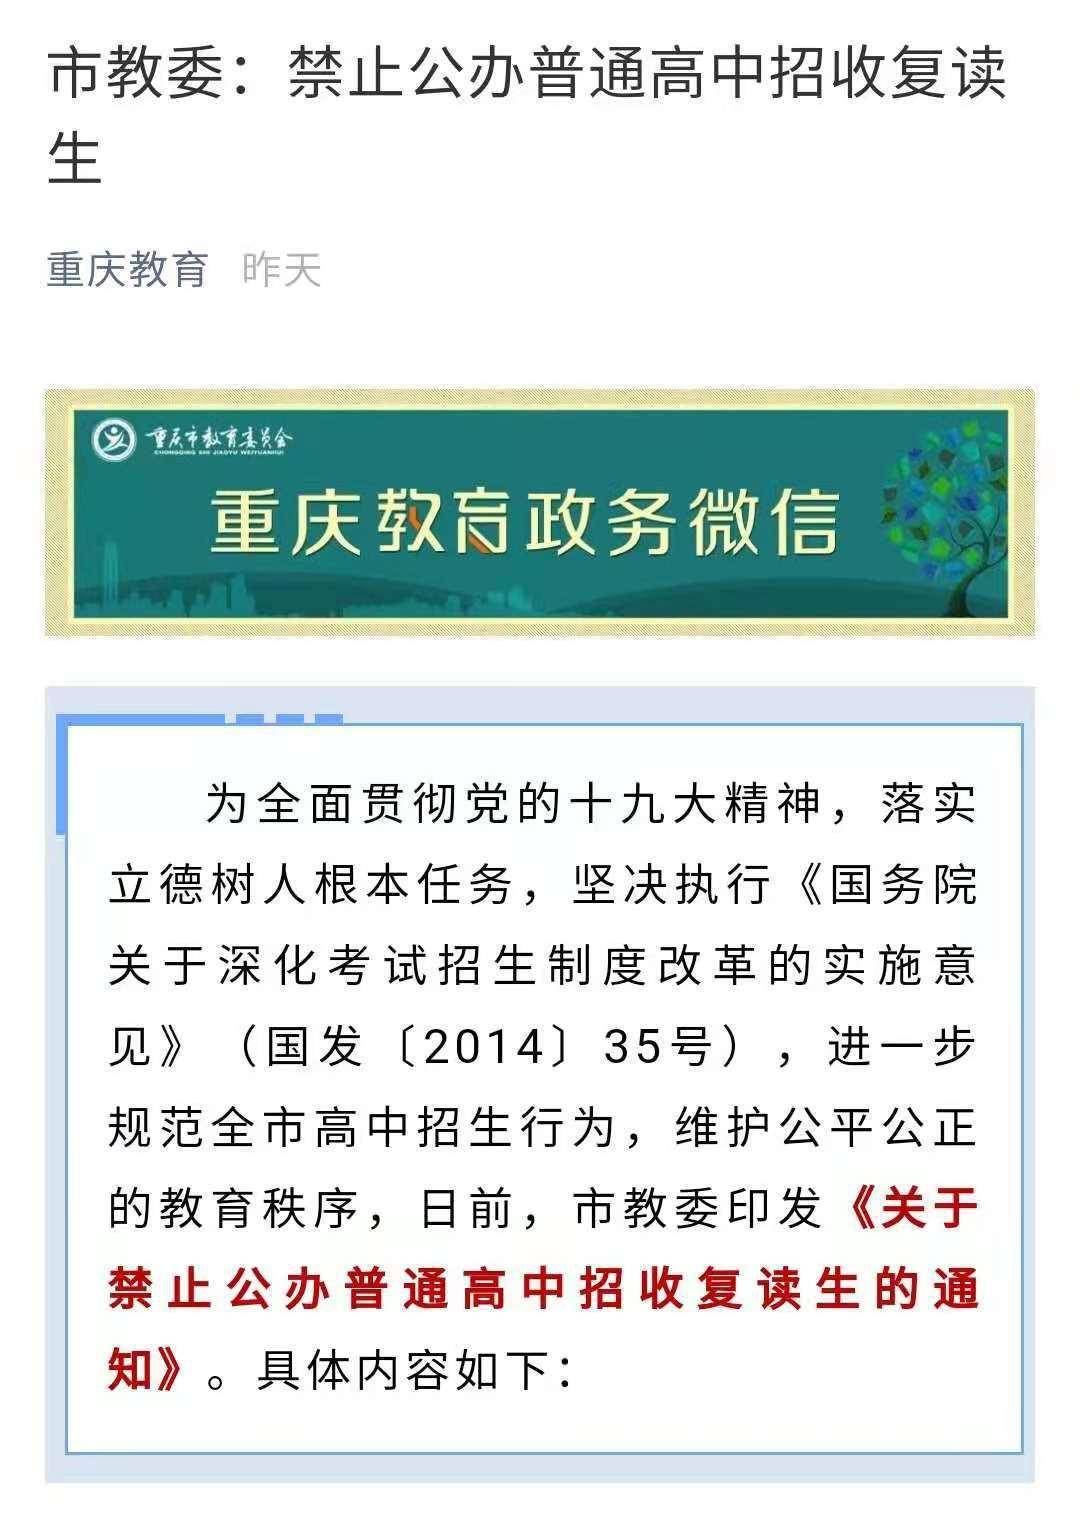 重庆市教委:禁止公办普通高中招收复读生